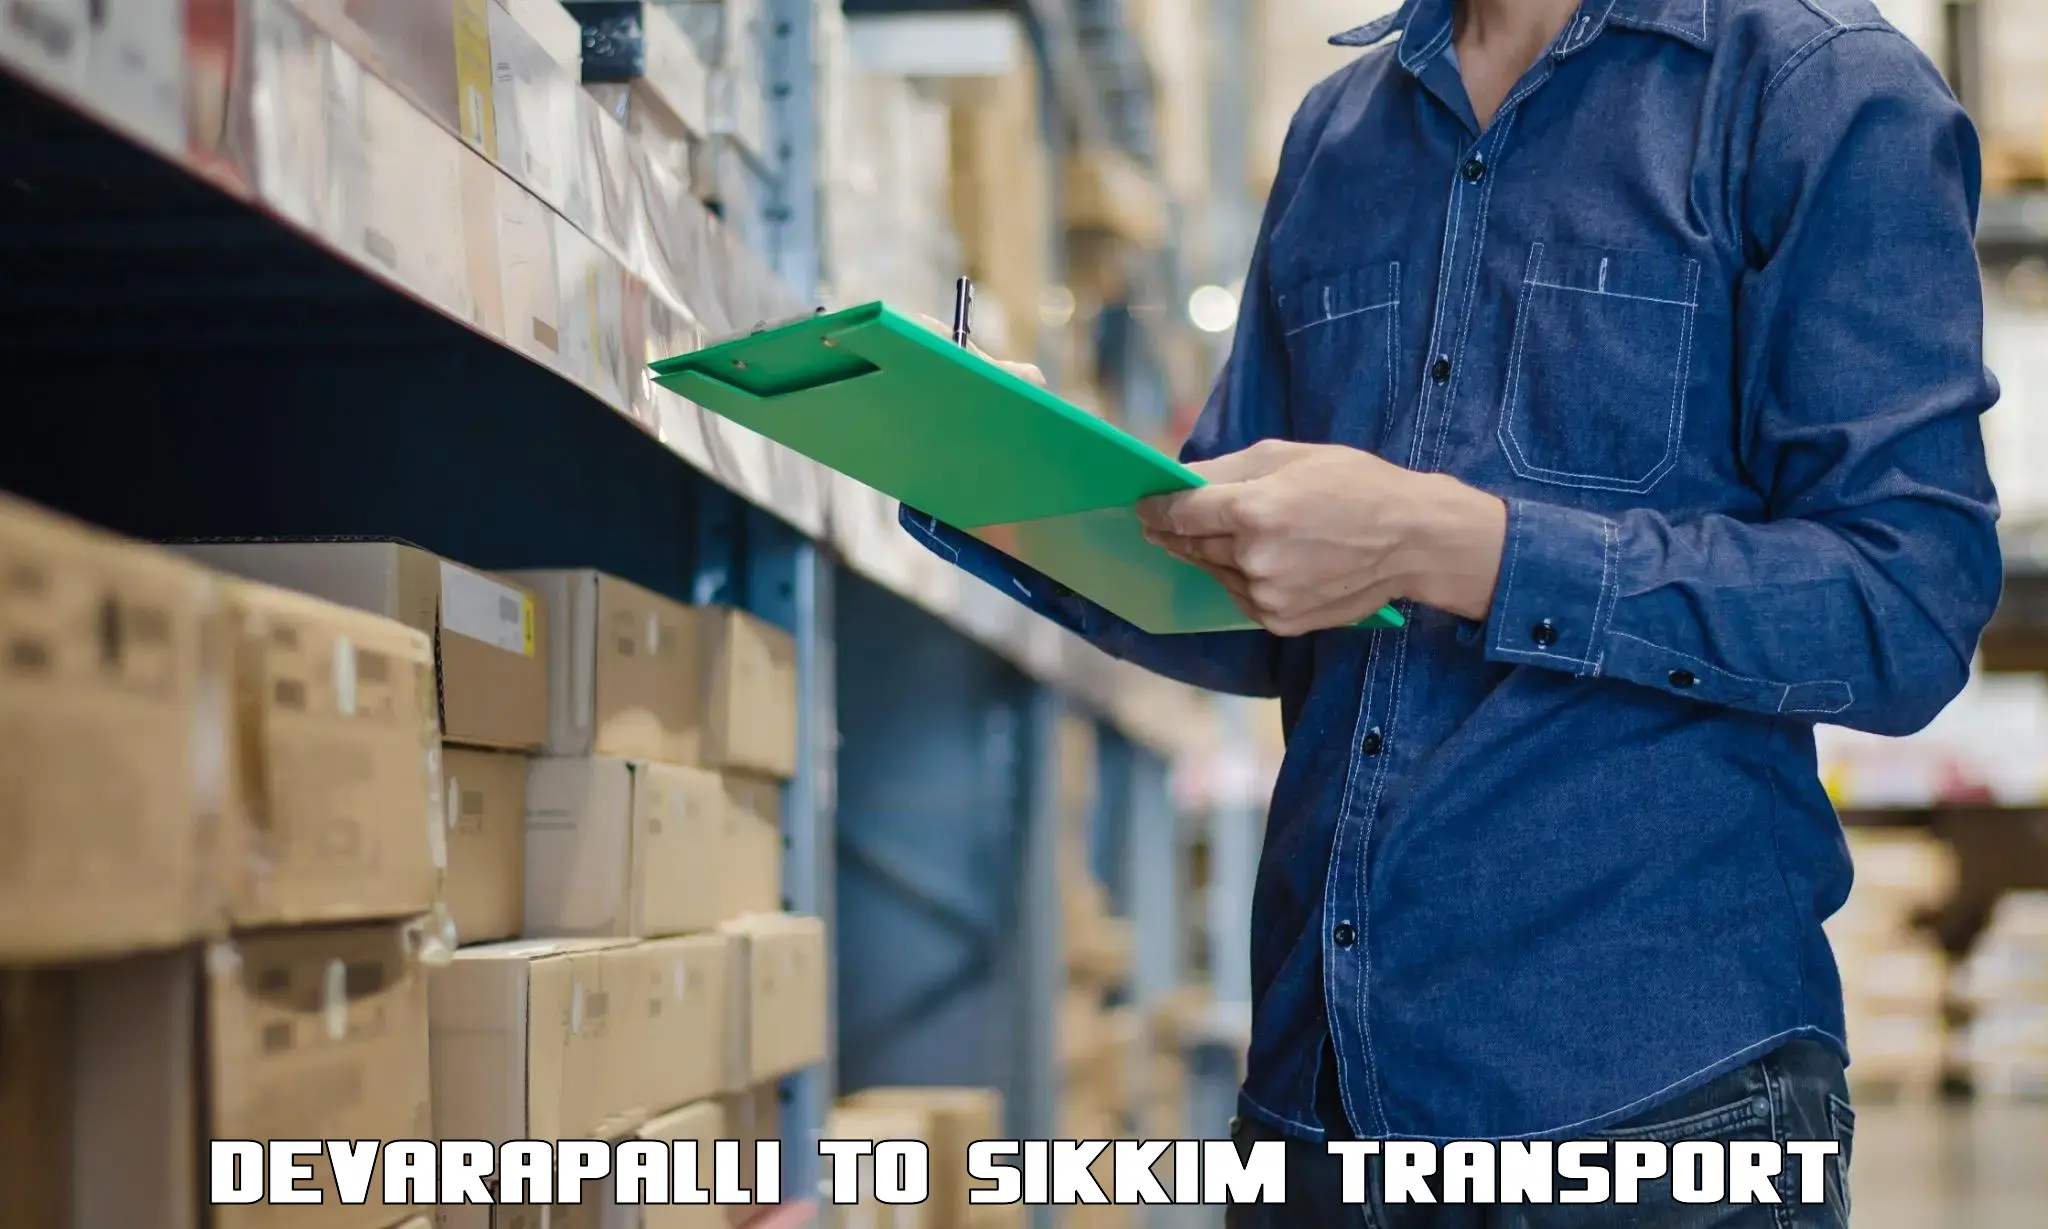 Shipping partner Devarapalli to South Sikkim